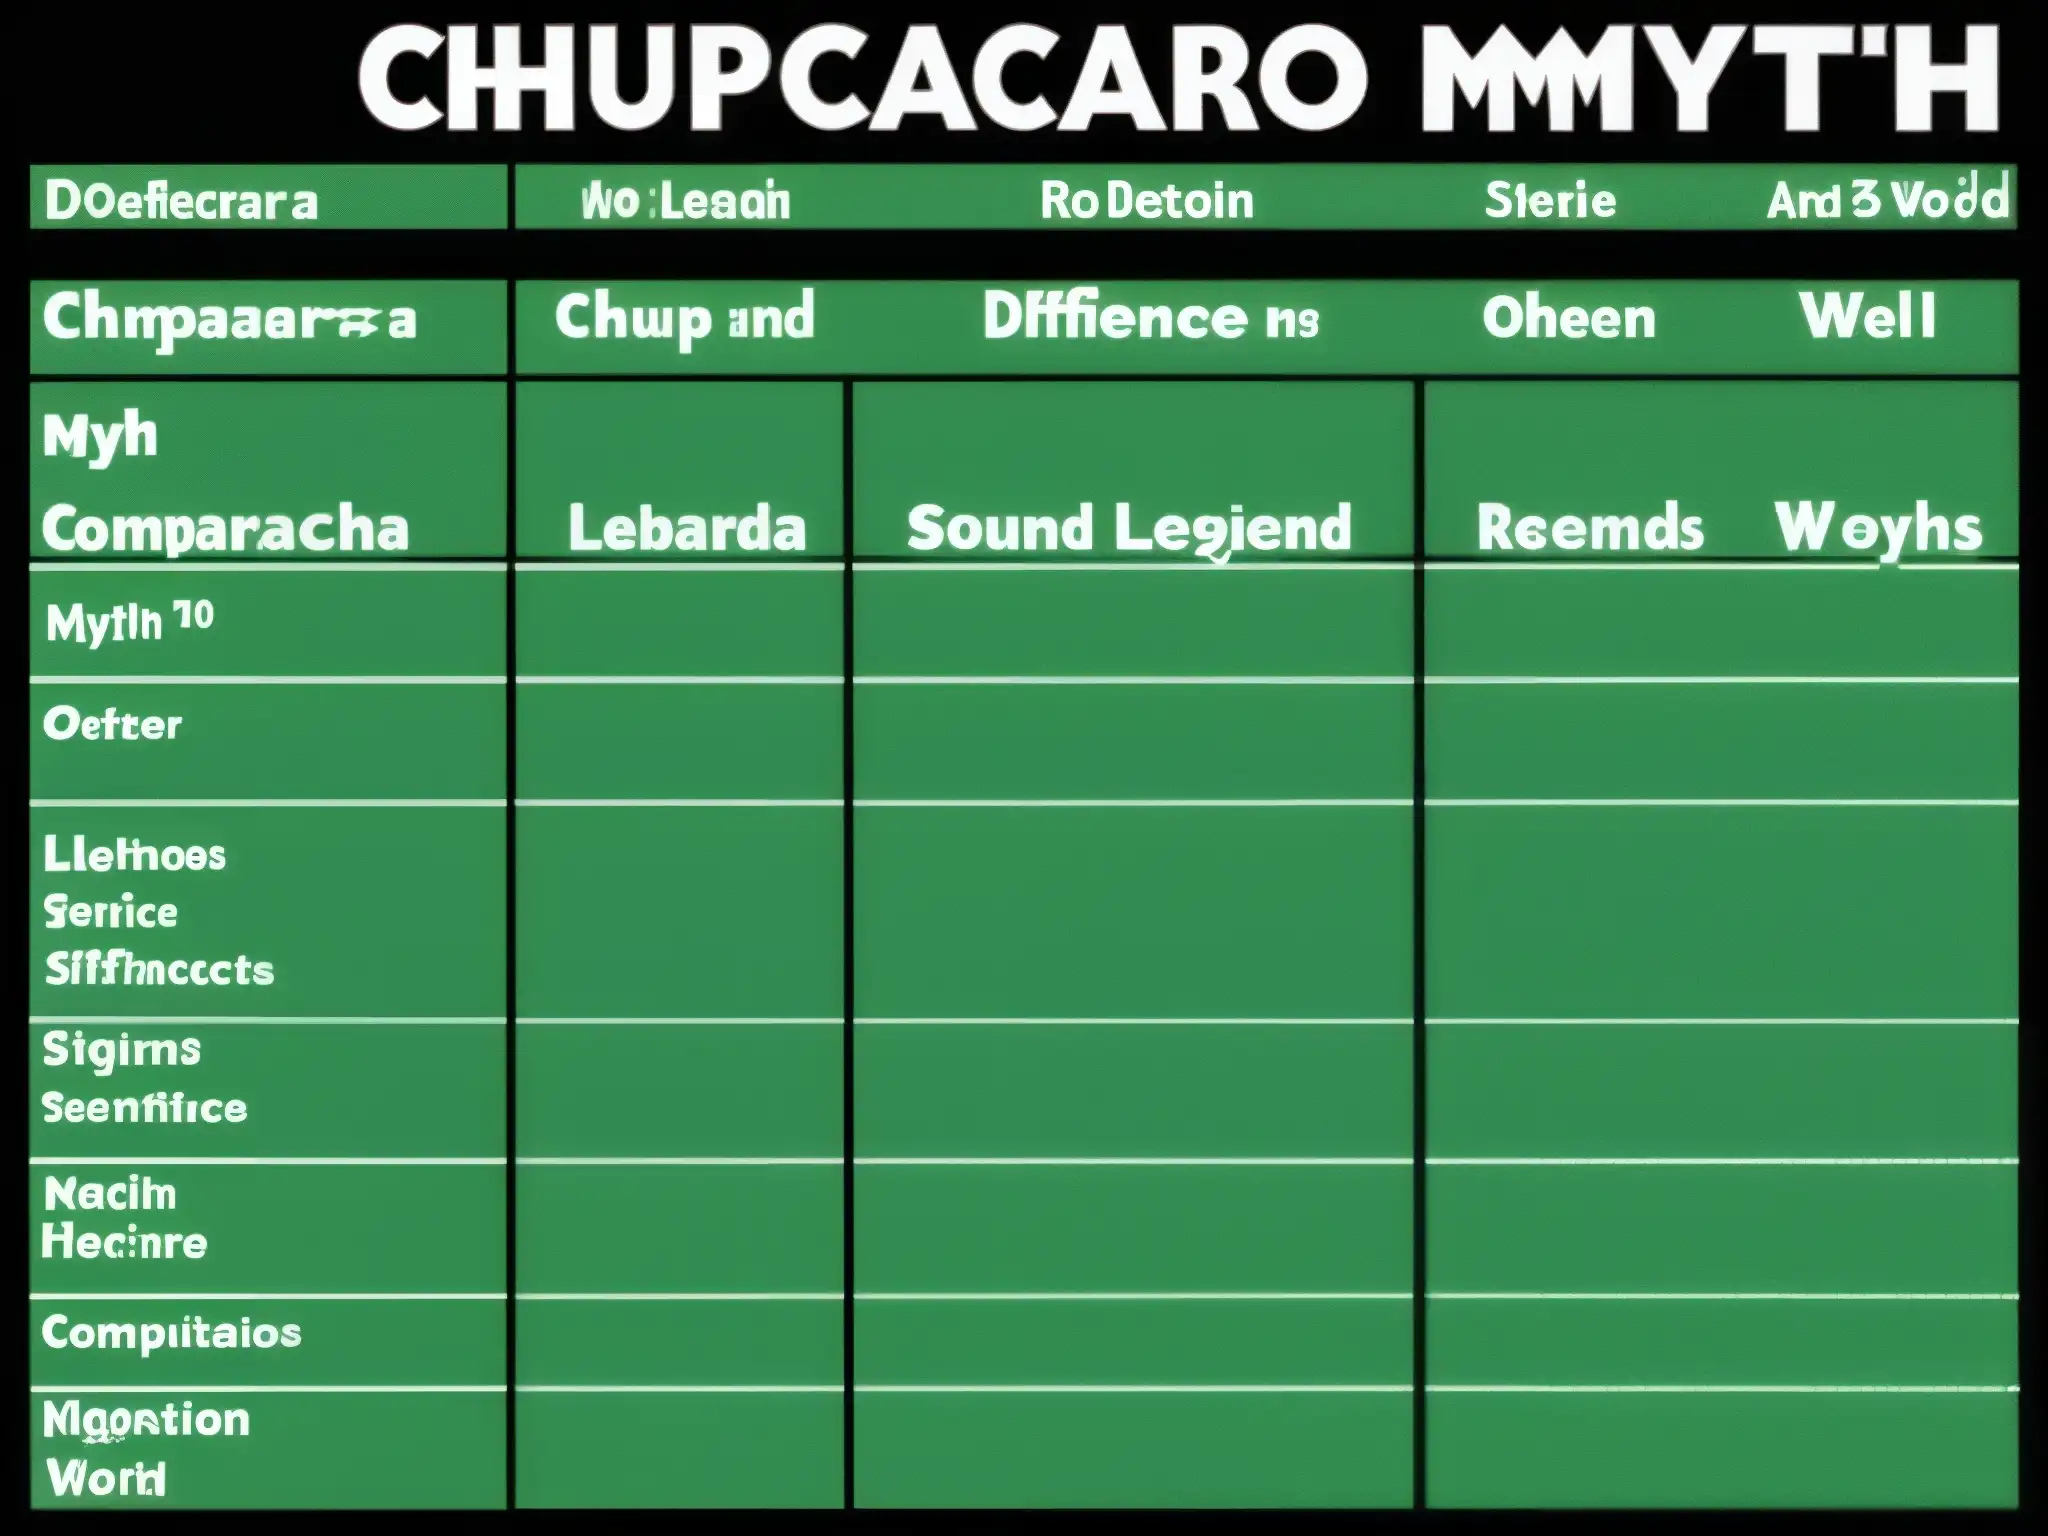 Comparativa detallada de mitos y leyendas, incluyendo el origen mitológico del Chupacabras